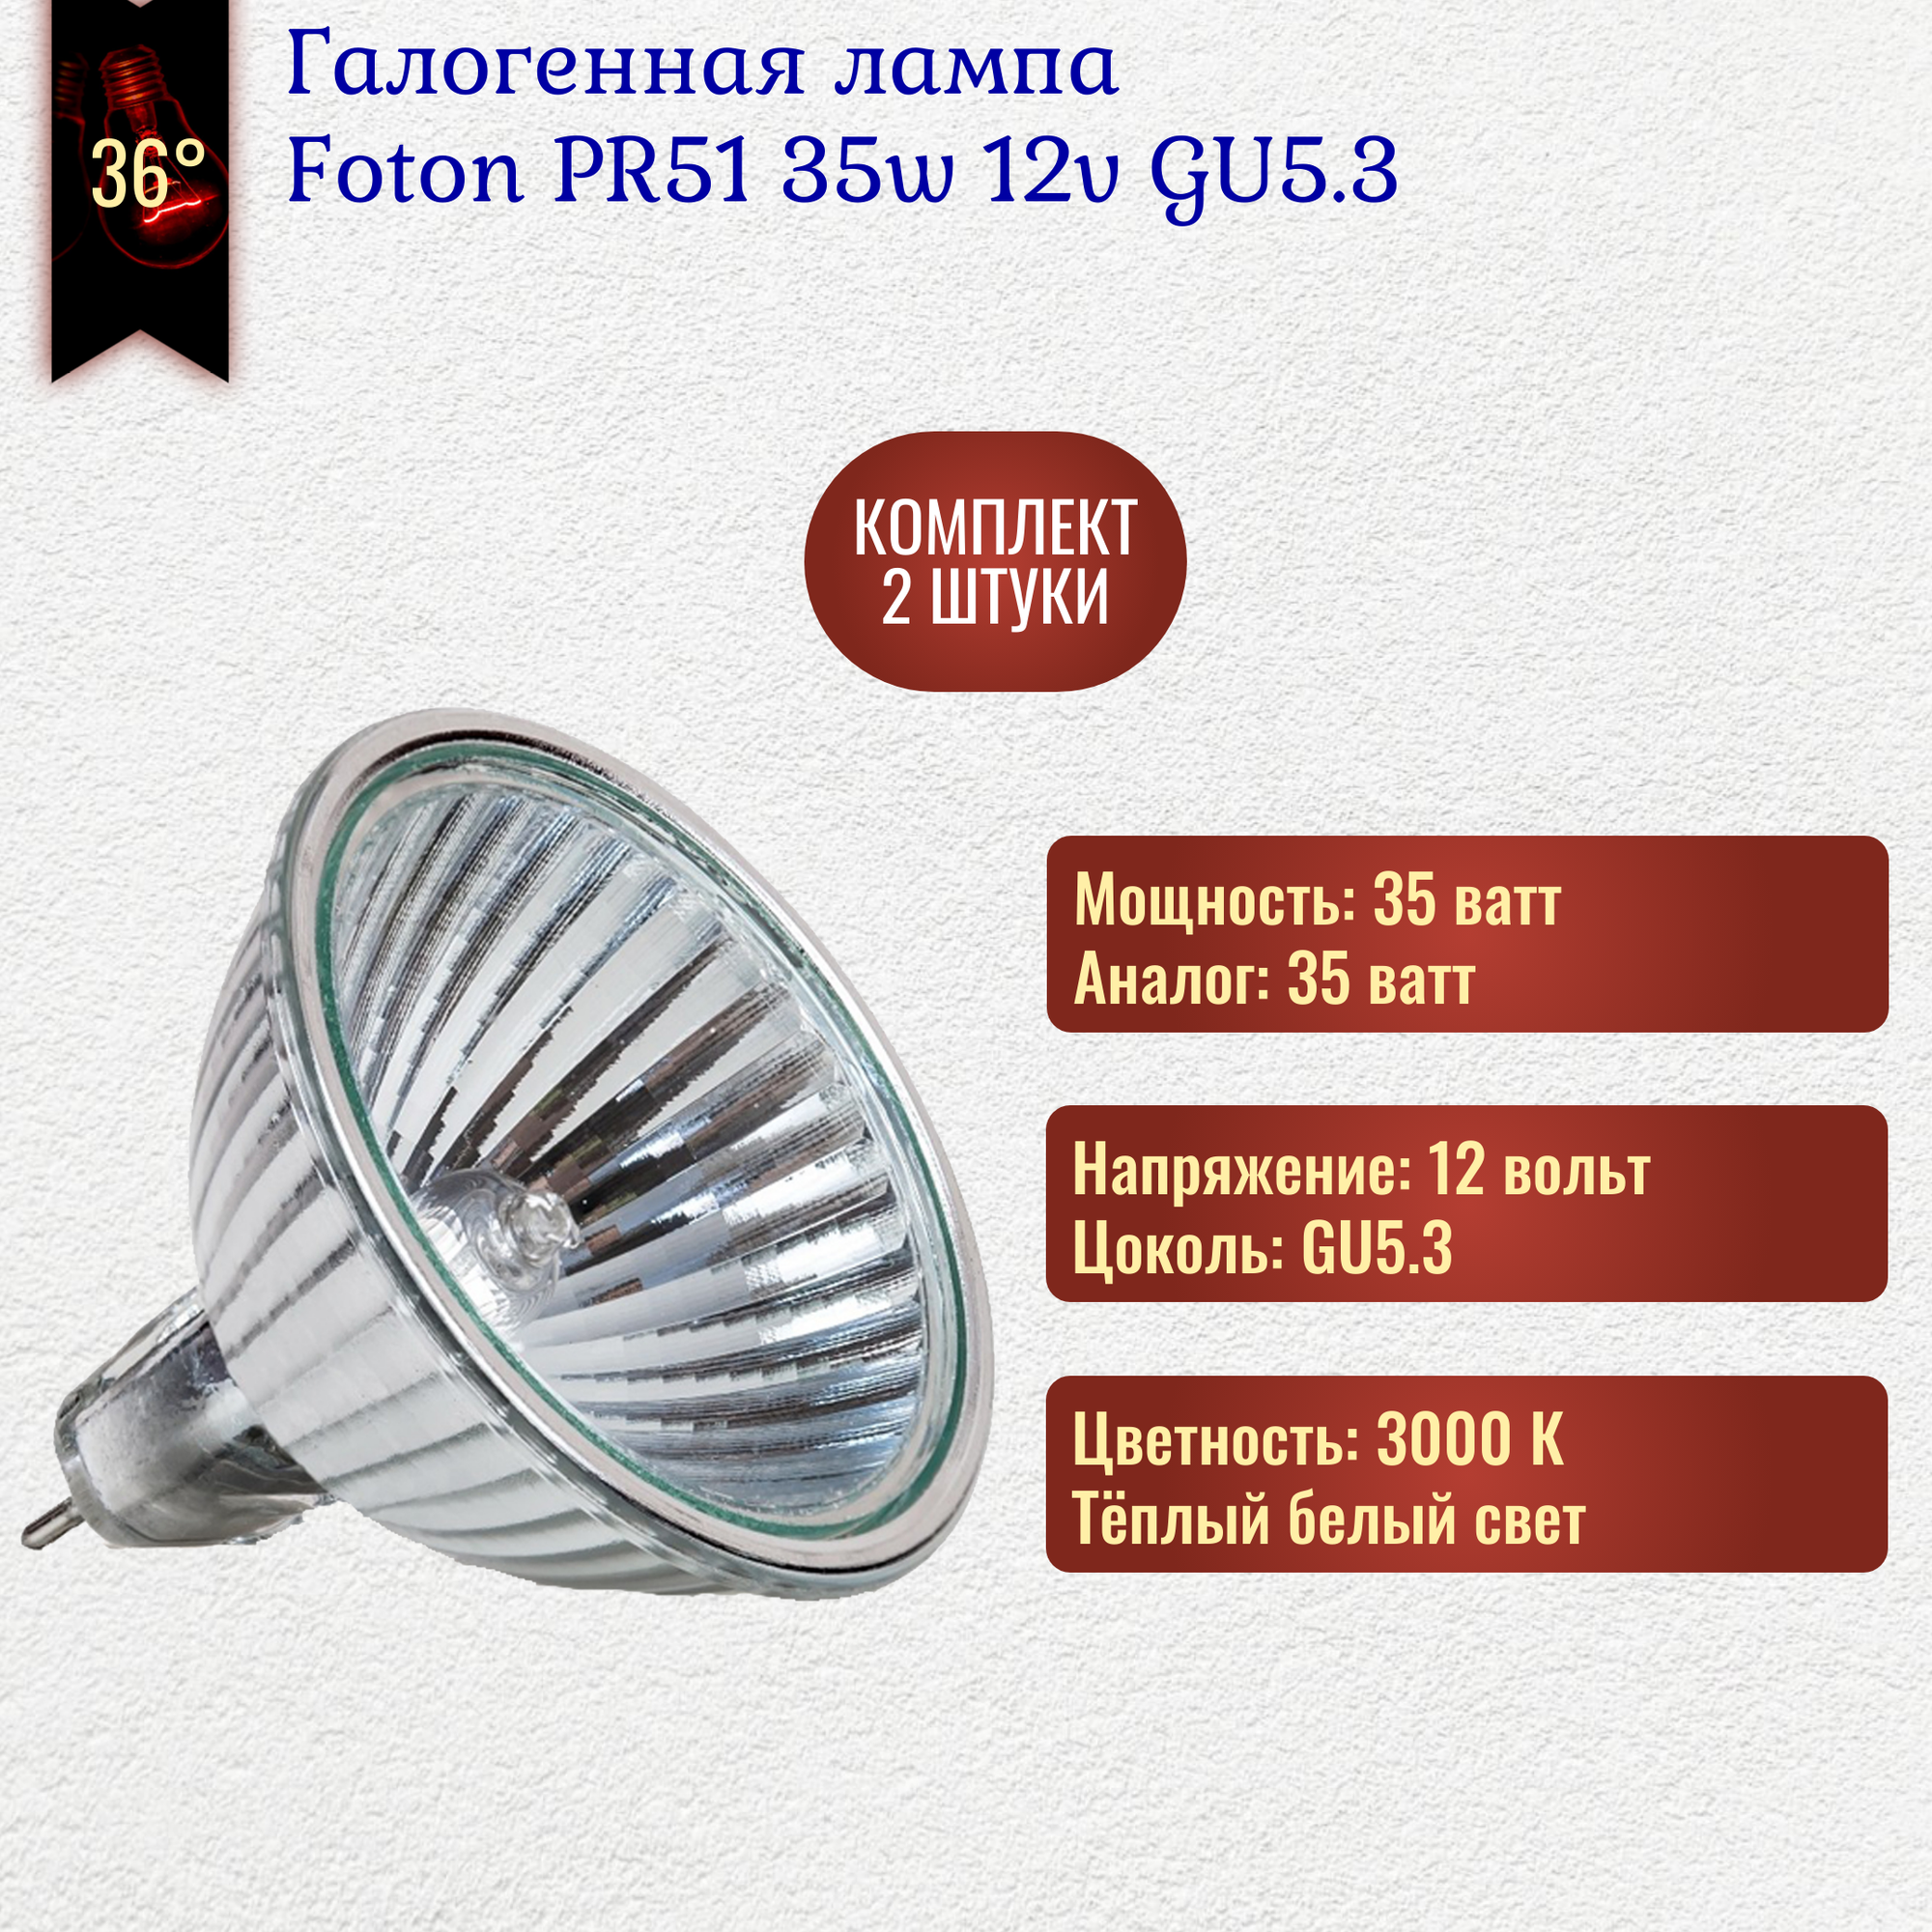 Лампочка Foton РR51 35w 12v GU5.3 галогенная, теплый белый свет / 2 штуки